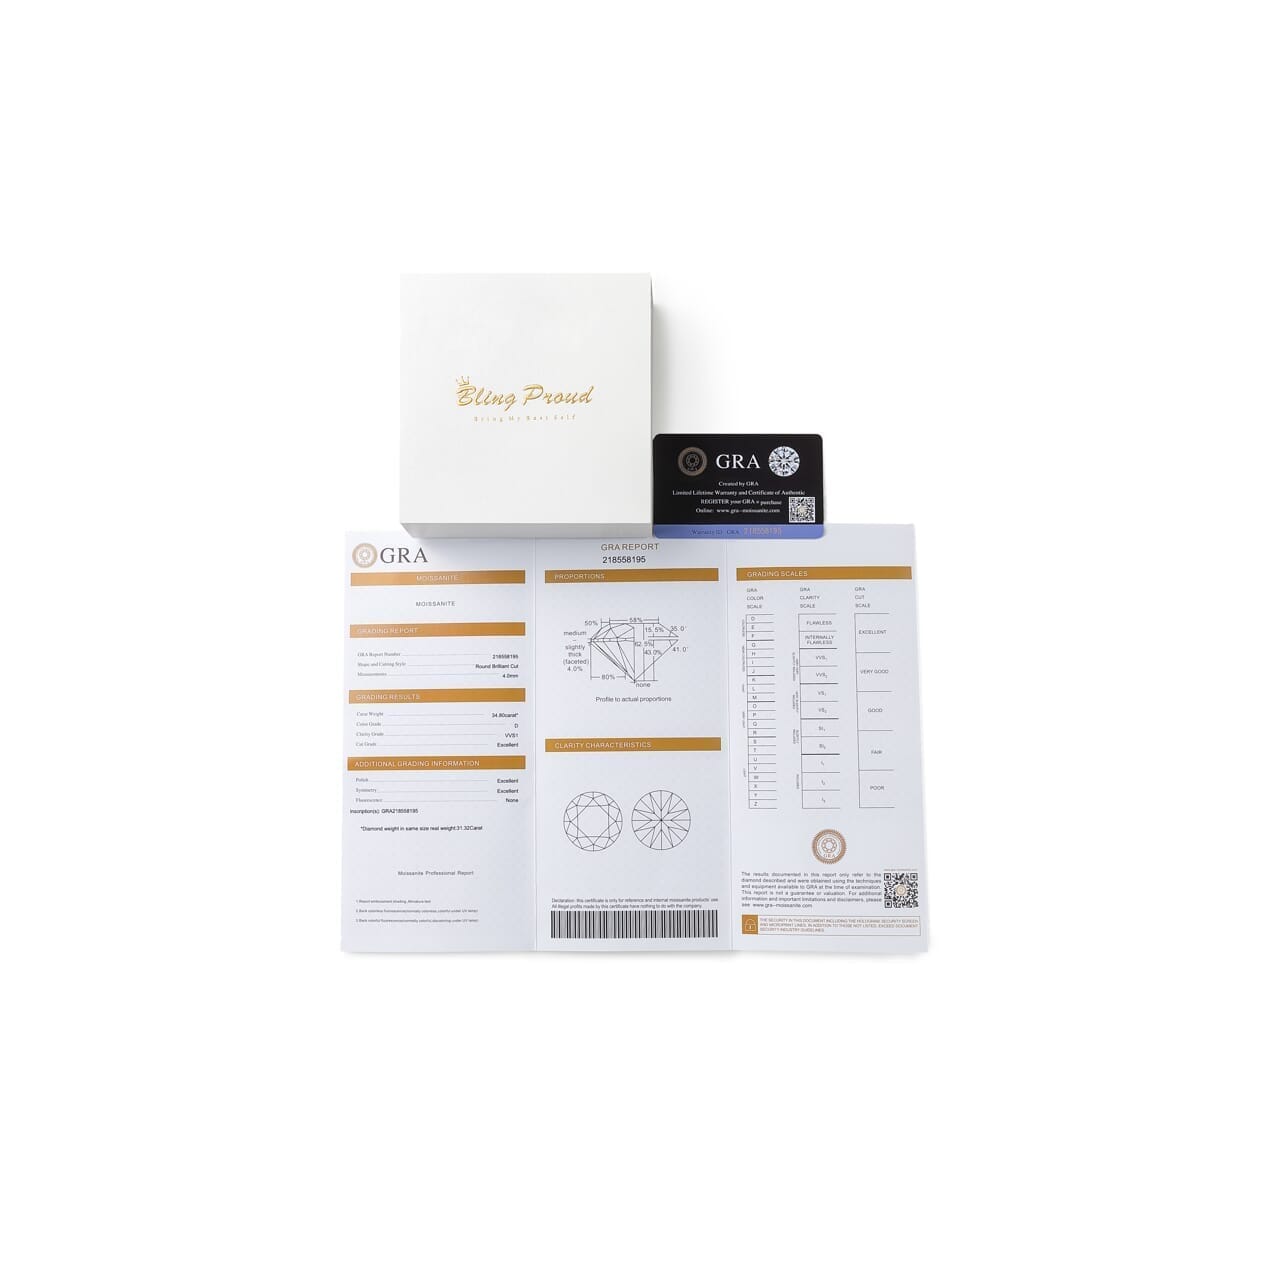 BLACK & PROUD™ - S925 Black Moissanite Earring Studs in White Gold - 2.0 Carat Earrings 